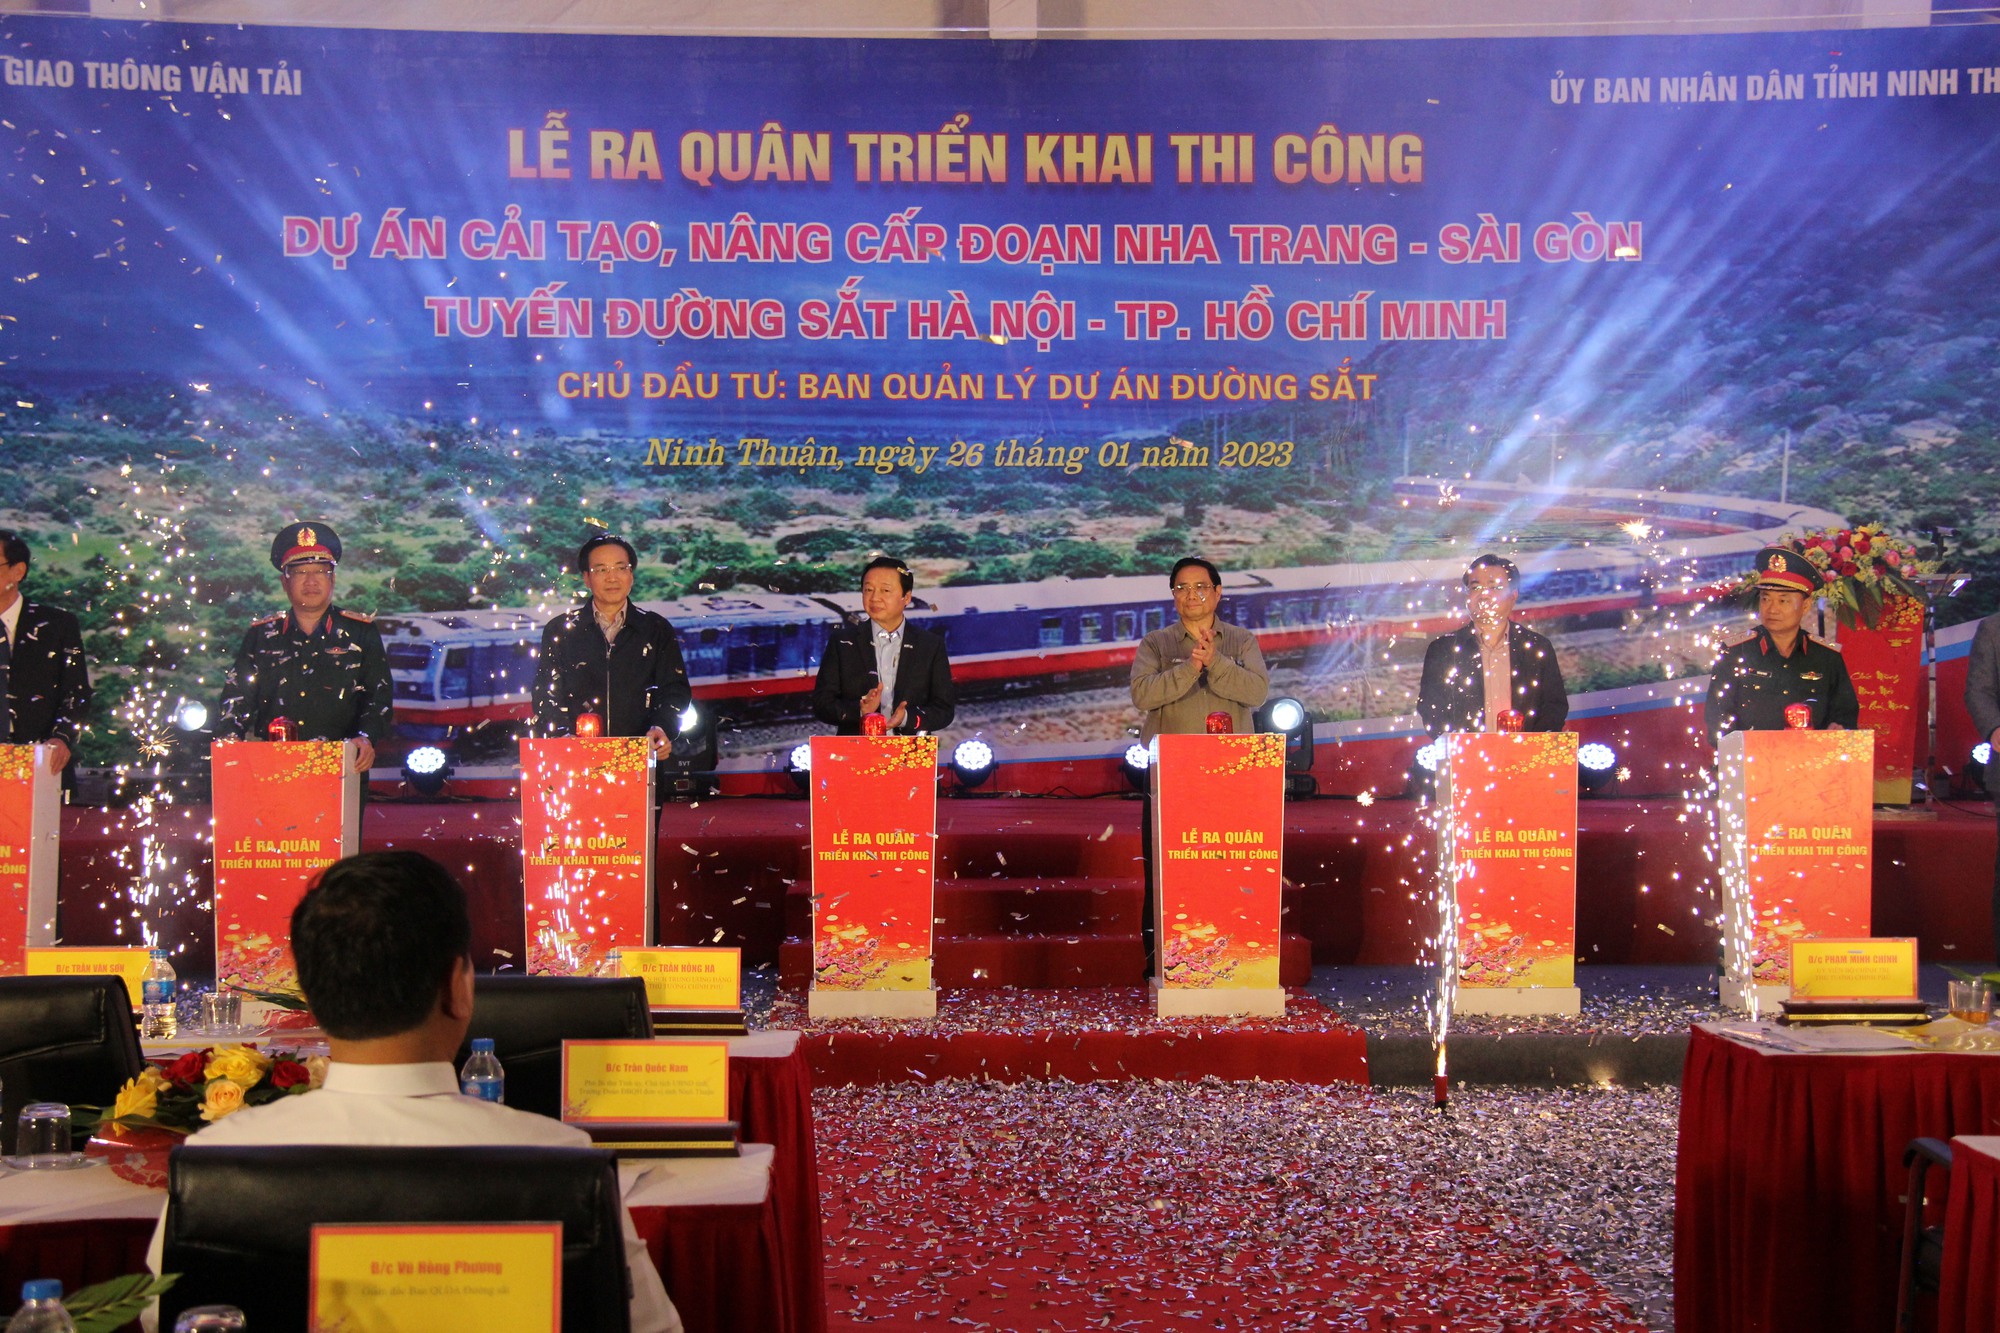 Thủ tướng phát lệnh thi công dự án đường sắt Nha Trang - Sài Gòn - Ảnh 1.